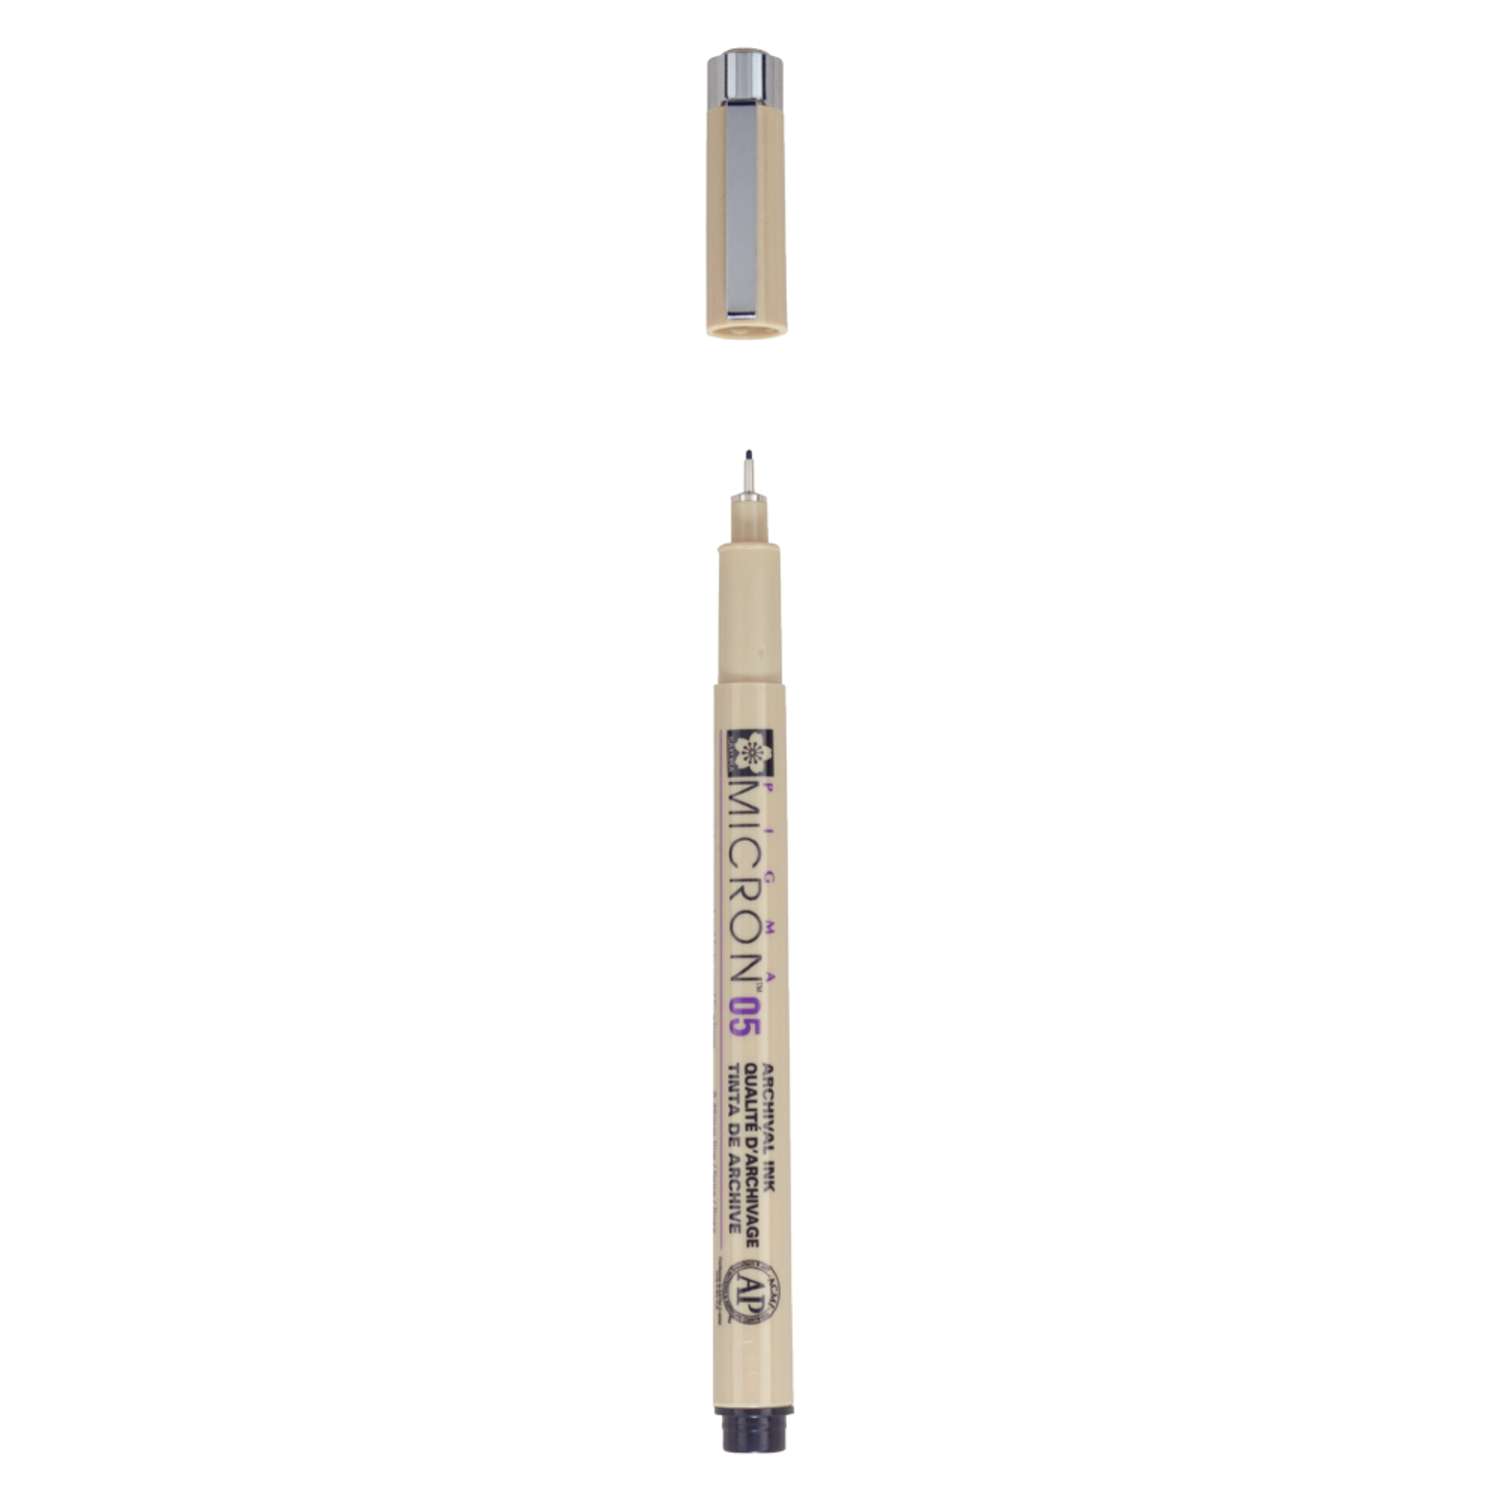 Ручка капиллярная Sakura Pigma Micron 05 цвет чернил: черный - фото 2